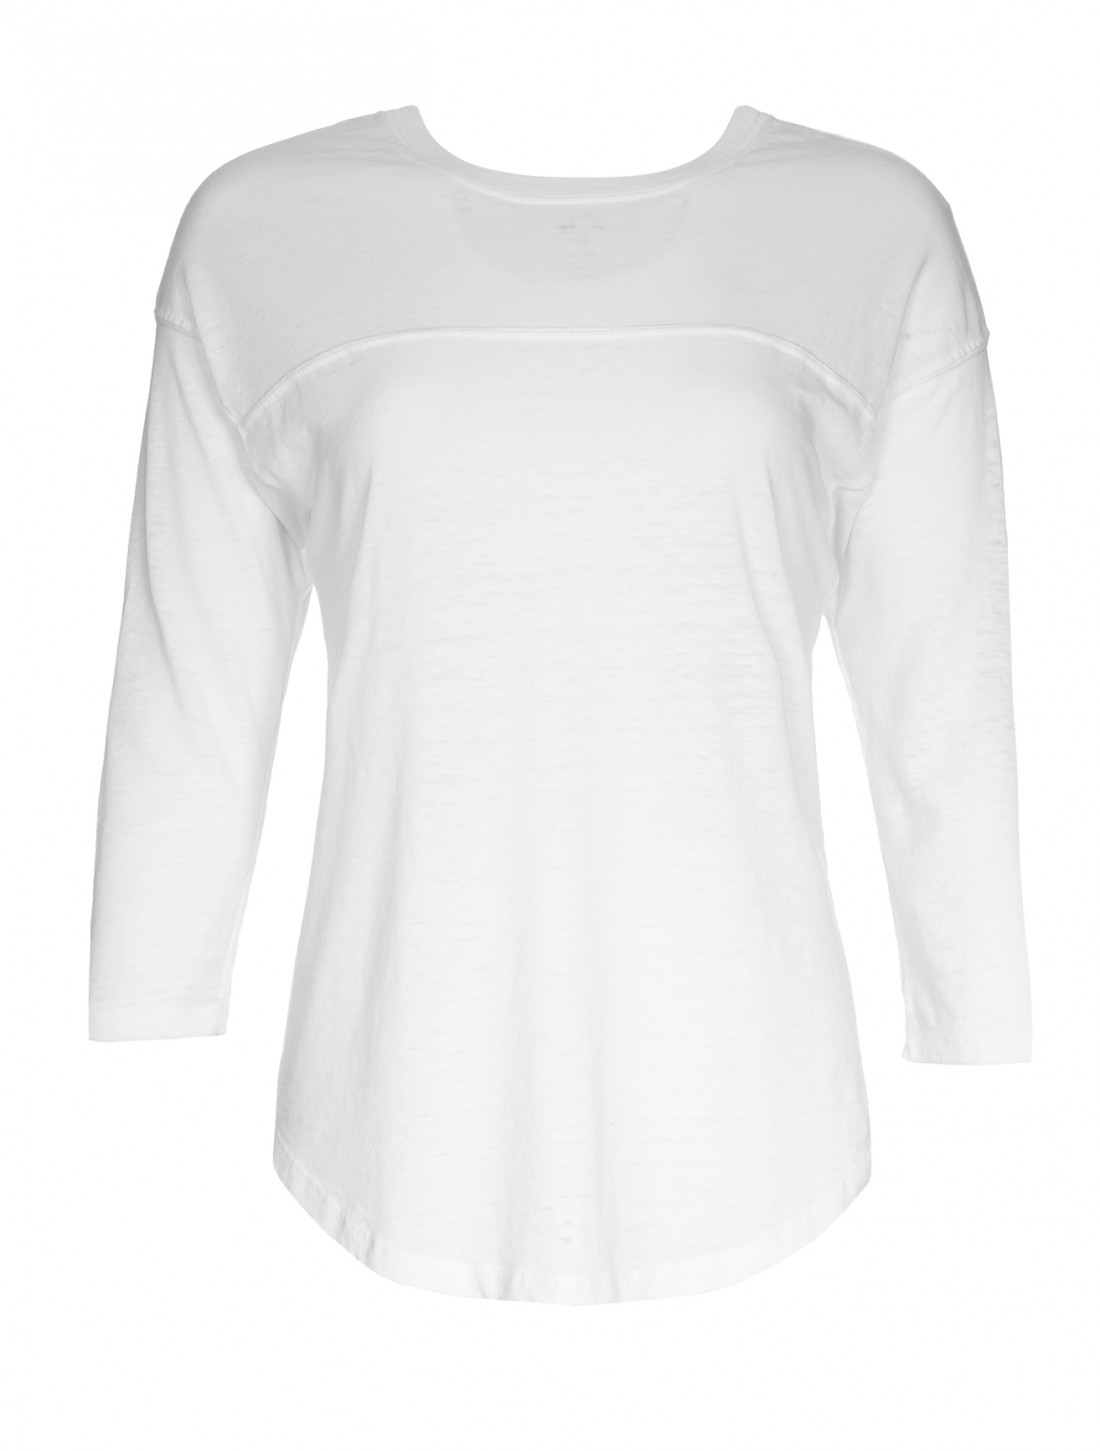 Nsf Clothing Three-Quarter Sleeve Slub Cotton Rizzo T-Shirt in White | Lyst